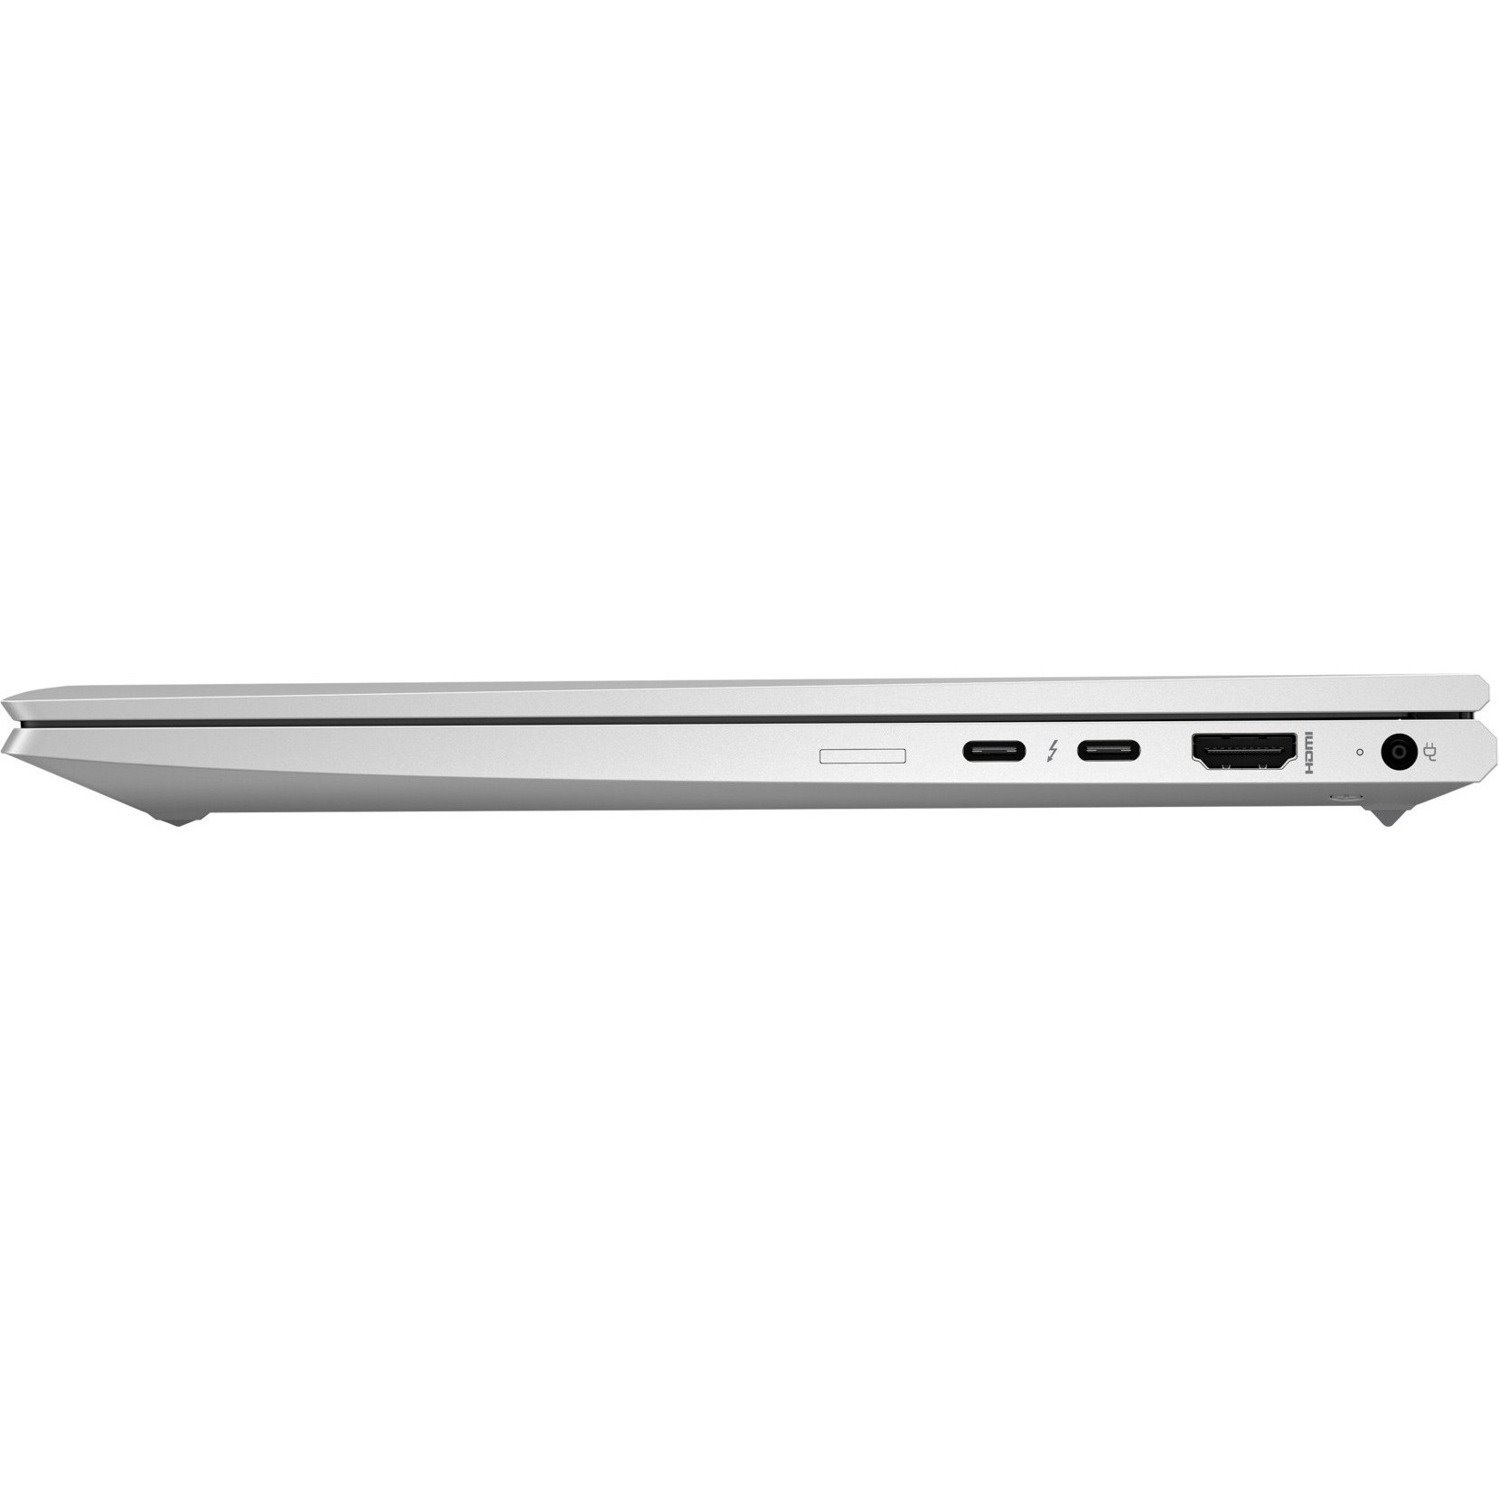 HP EliteBook 830 G8 13.3" Notebook - Full HD - 1920 x 1080 - Intel Core i7 11th Gen i7-1185G7 - 16 GB Total RAM - 512 GB SSD